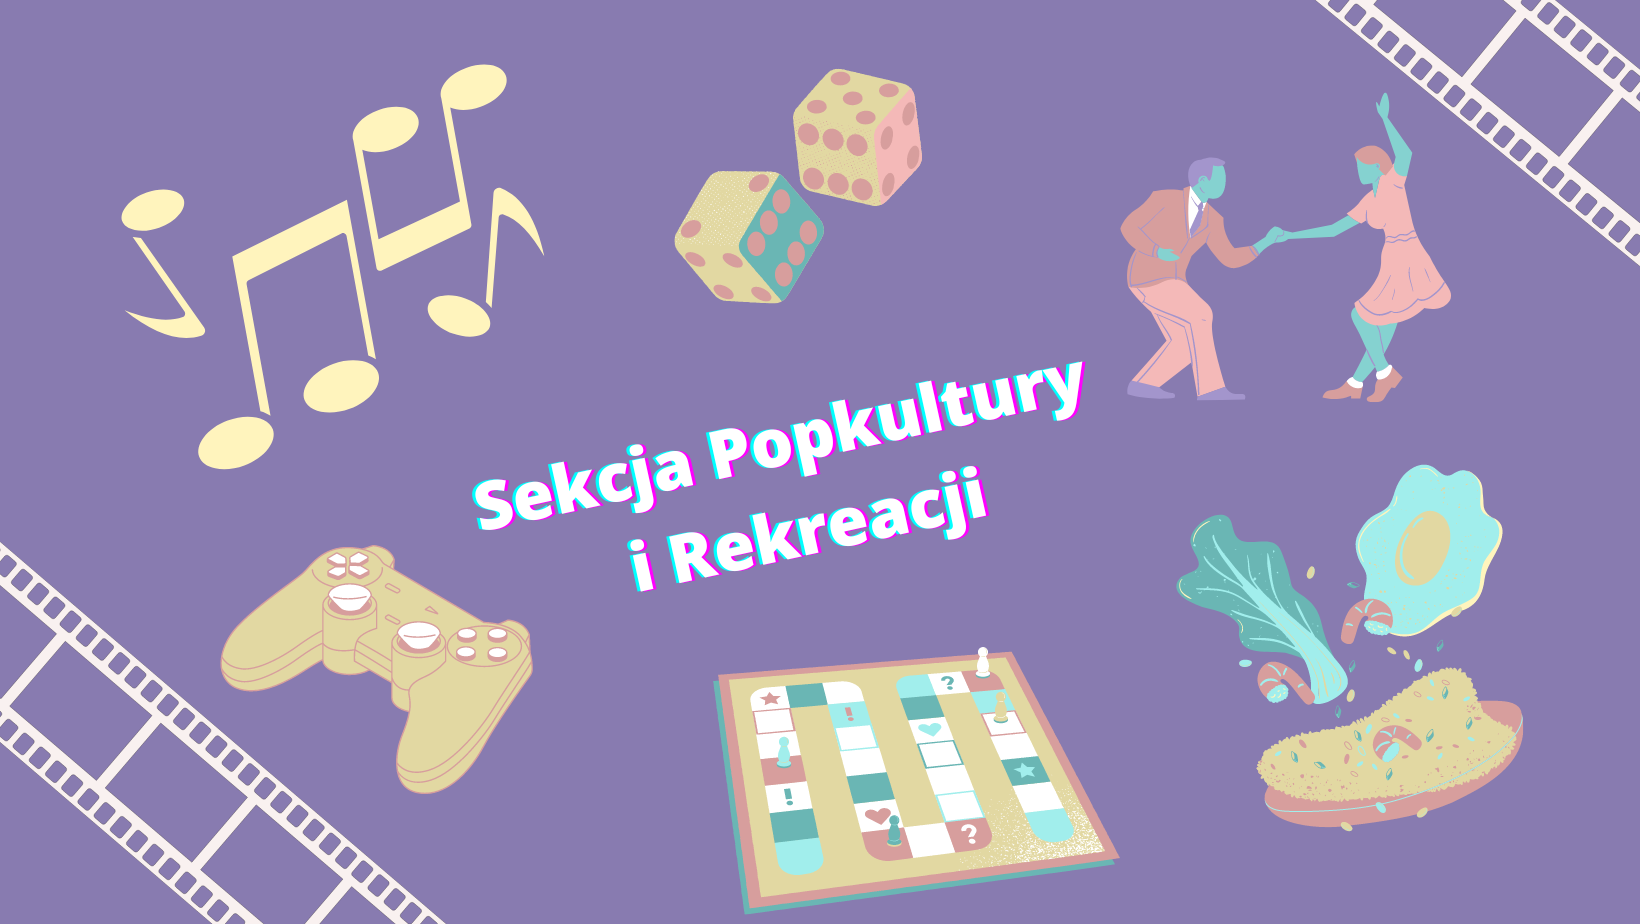 [Grafika: na fioletowym tle napis "Sekcja Popkultury i Rekreacji", wokół grafiki przedstawiające nuty, kostki do gry, tańczących ludzi, pad do konsoli, grę planszową i kulinaria.]